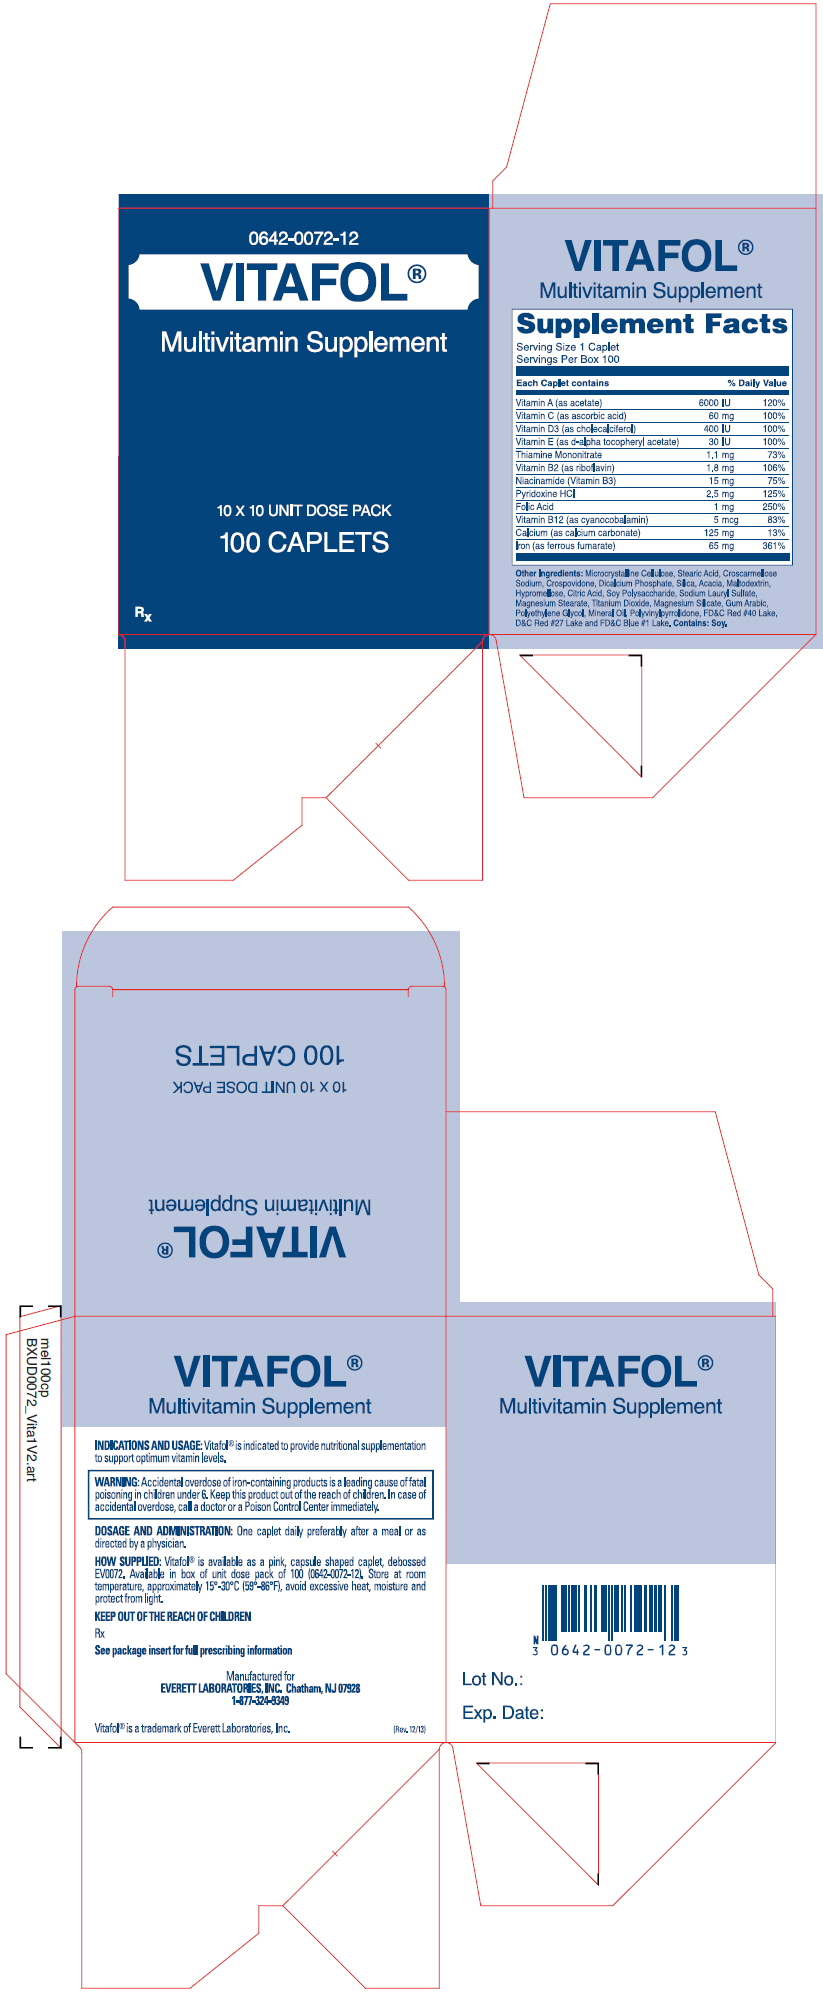 PRINCIPAL DISPLAY PANEL - 100 Caplet Carton